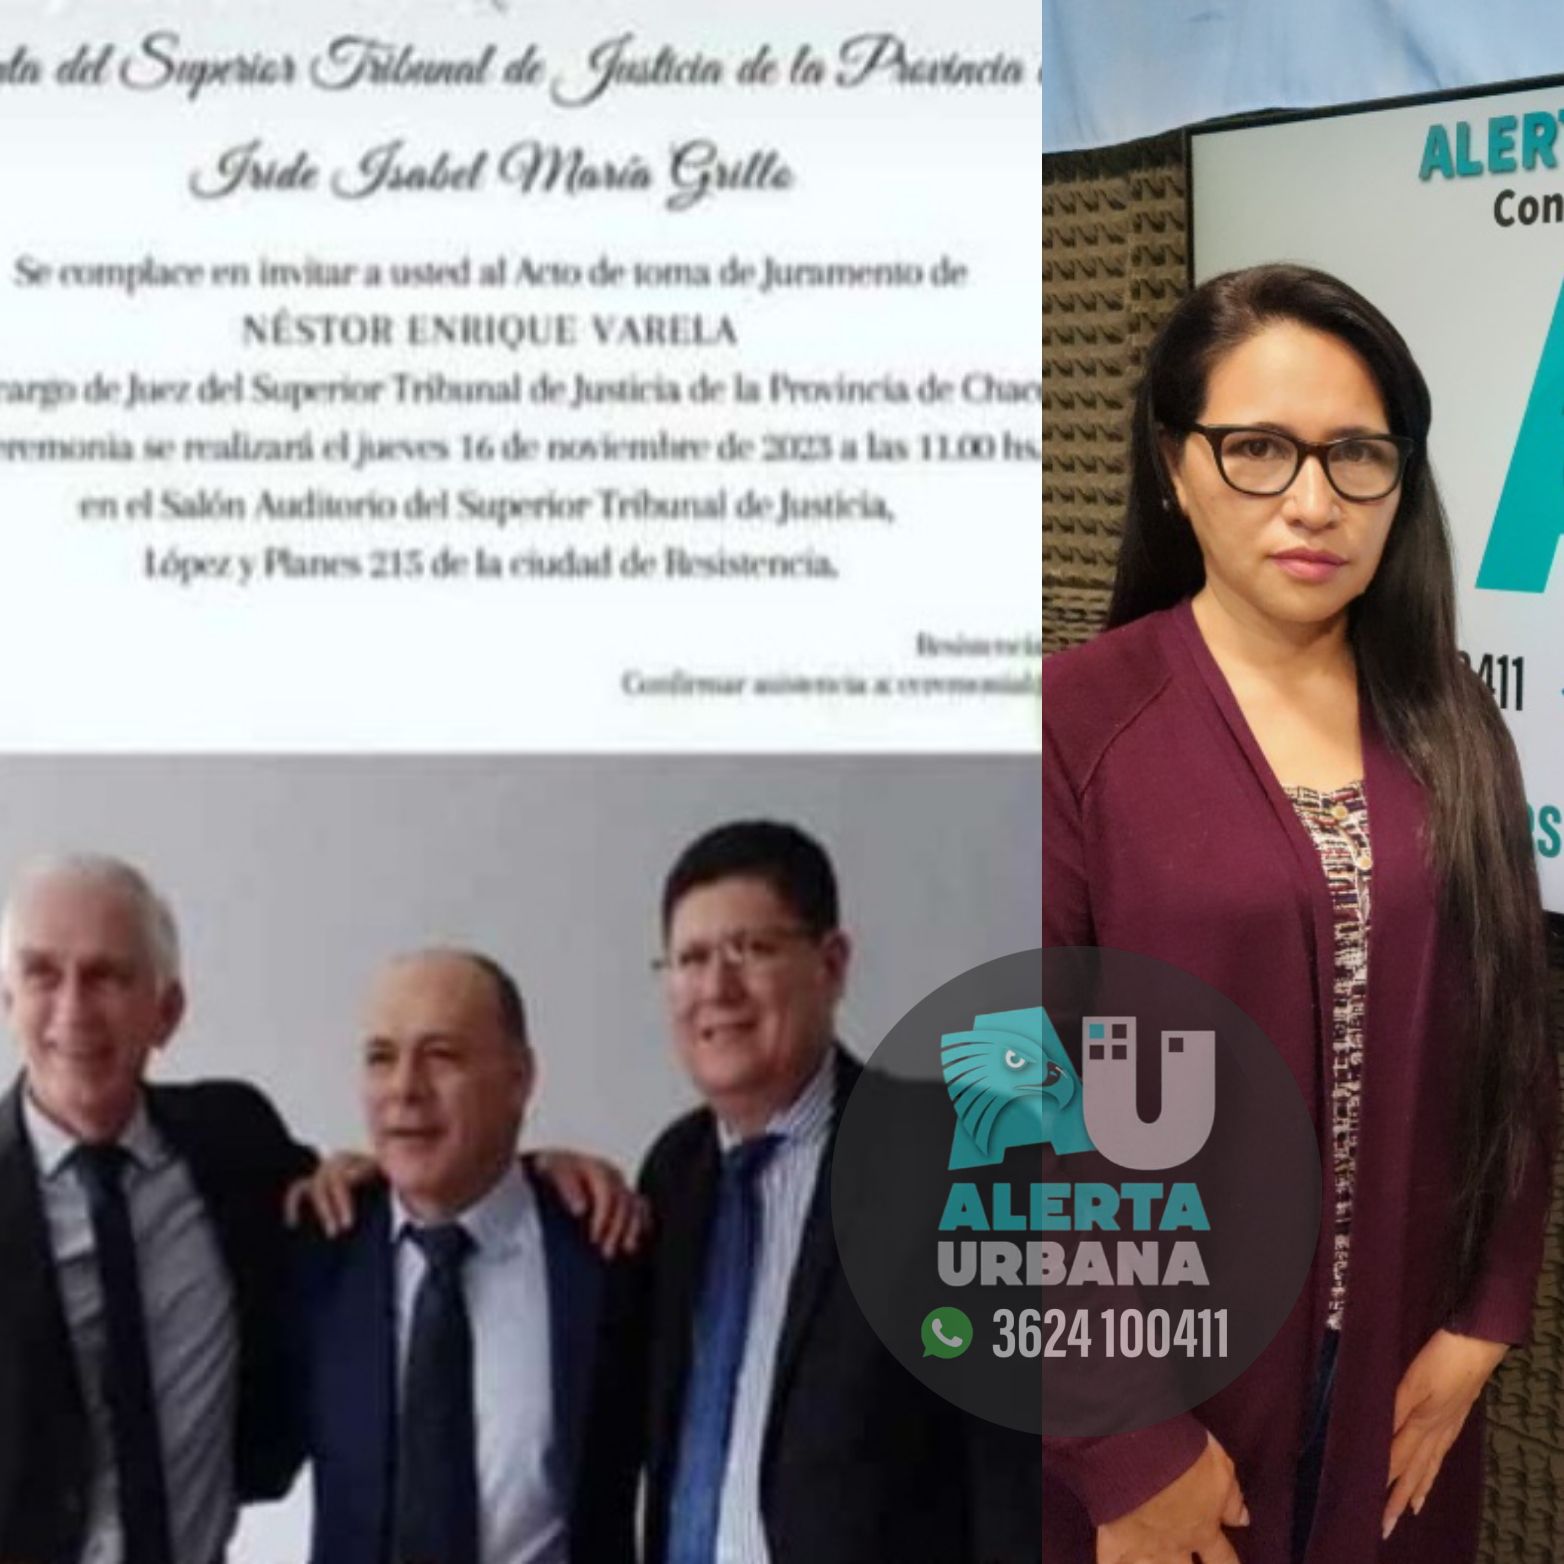 Viviana Anriquez: “El abusador de mi hija se saca fotos con ministros del Superior Tribunal de Justicia”